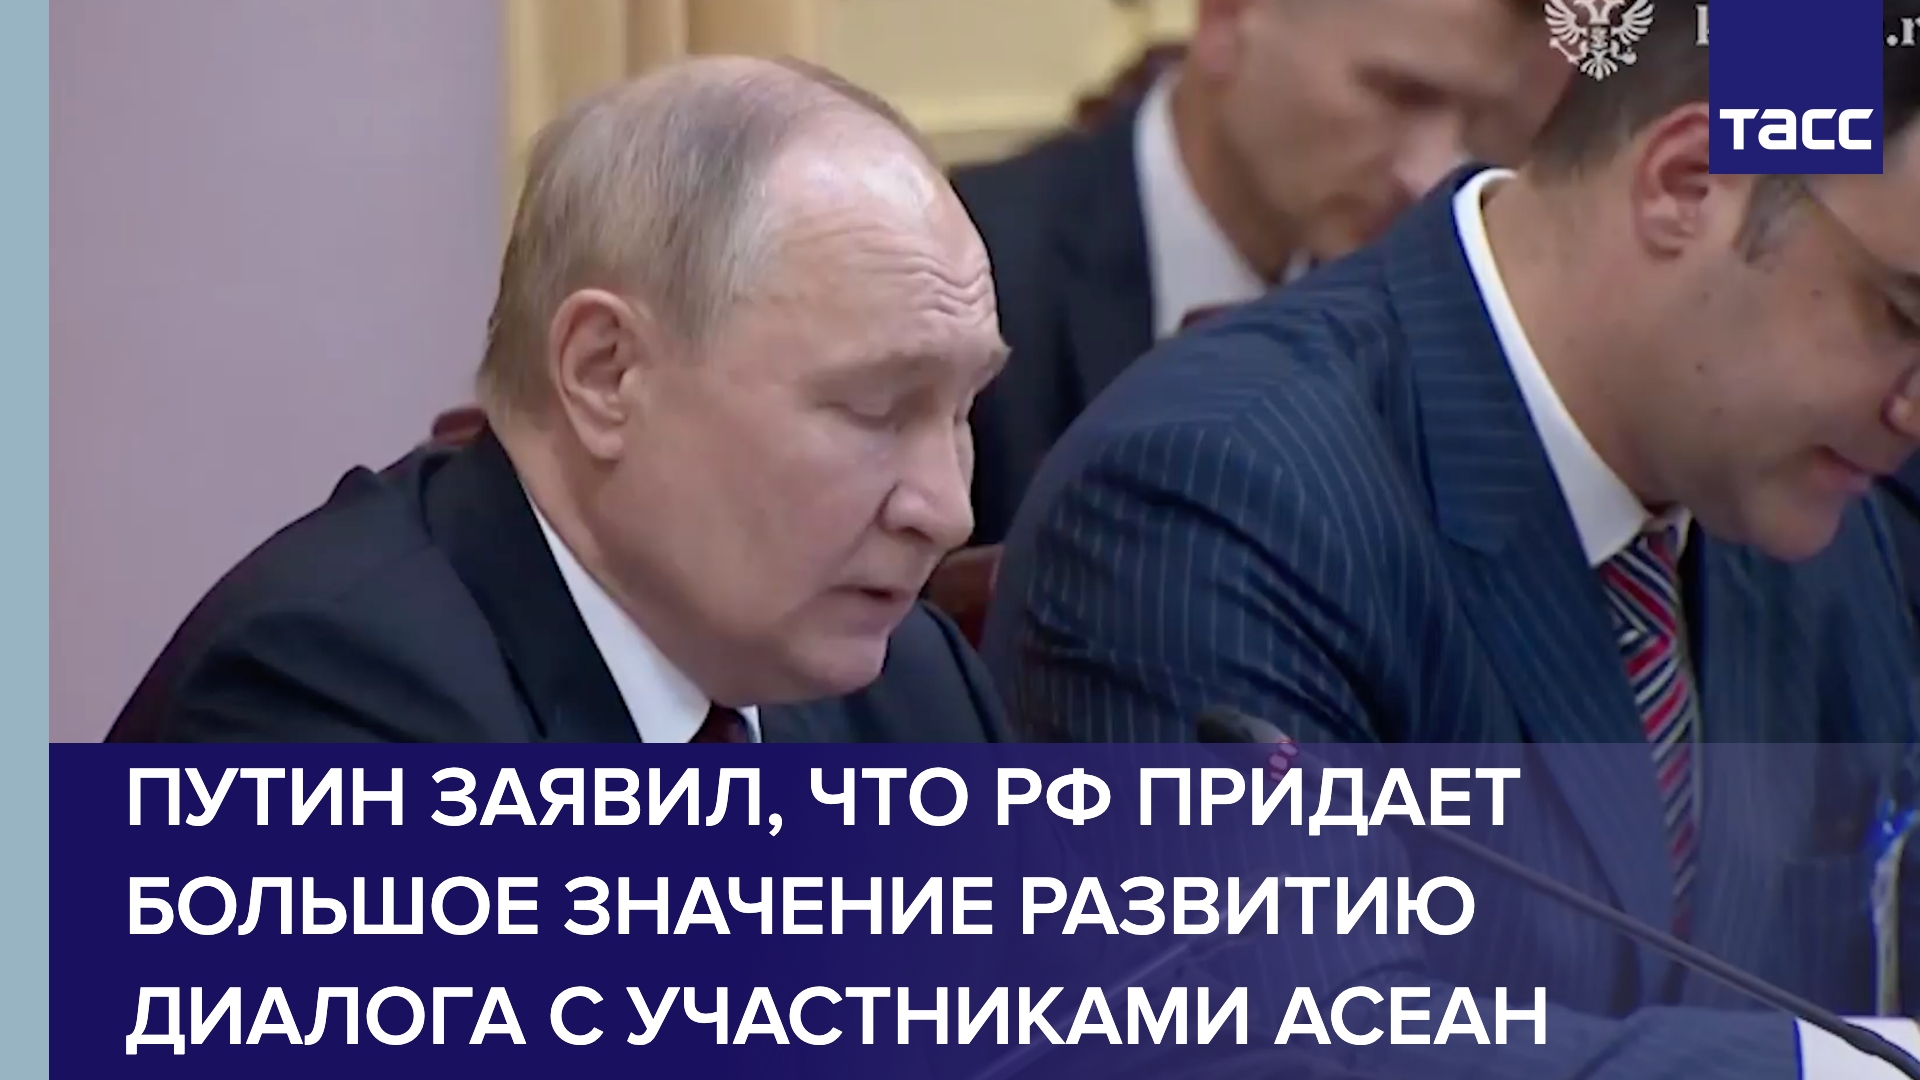 Путин заявил, что РФ придает большое значение развитию диалога с участниками АСЕАН